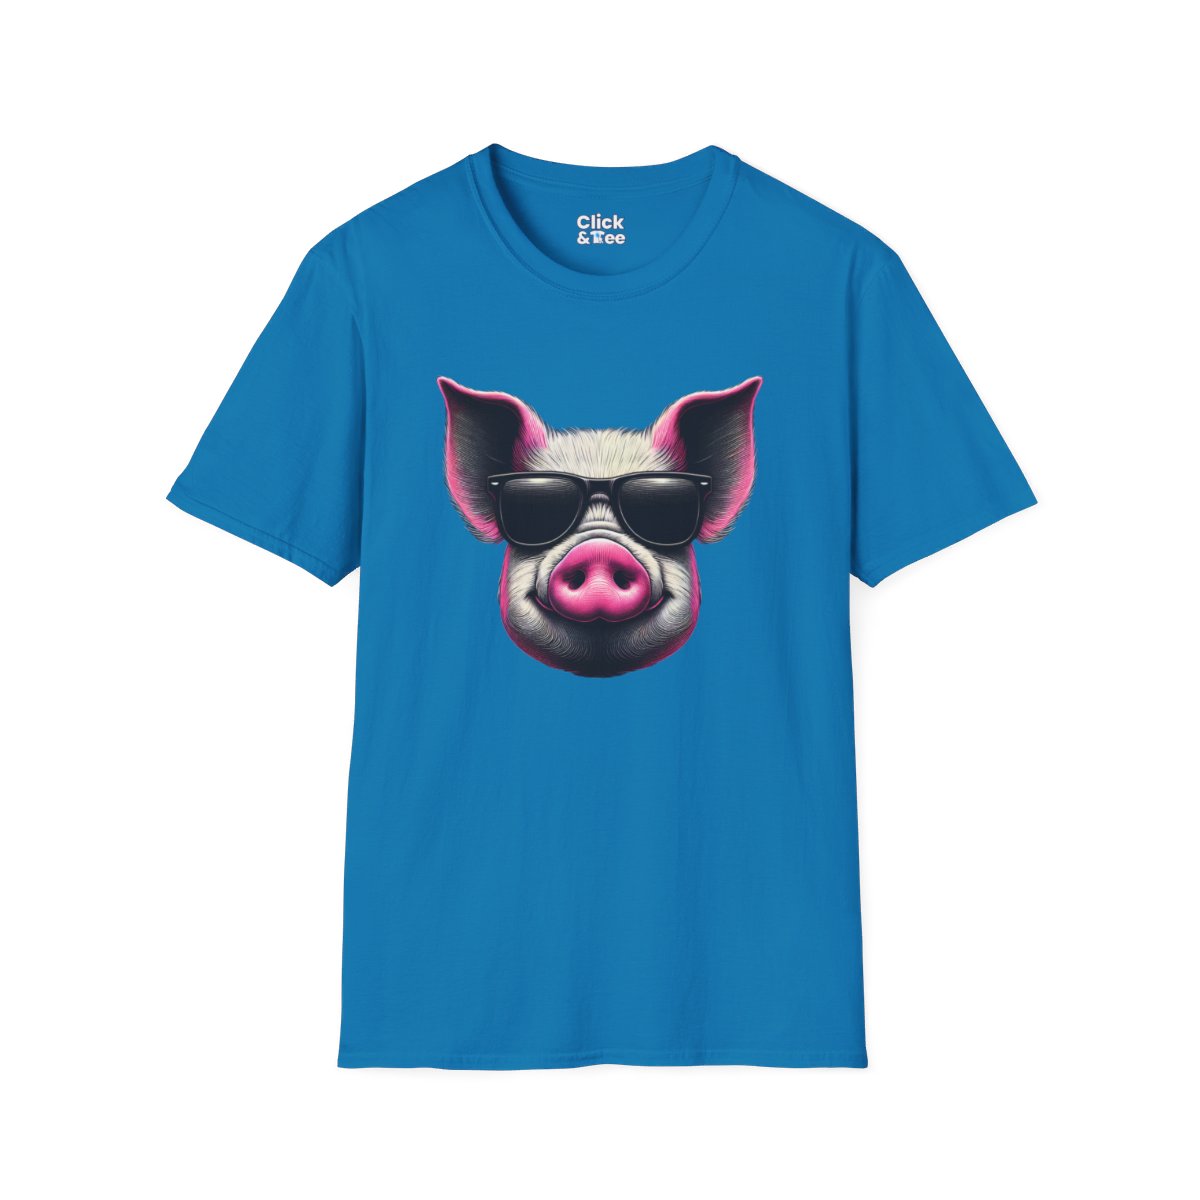 Graphic ArtPink Pig Face Unique T-Shirt Image 15